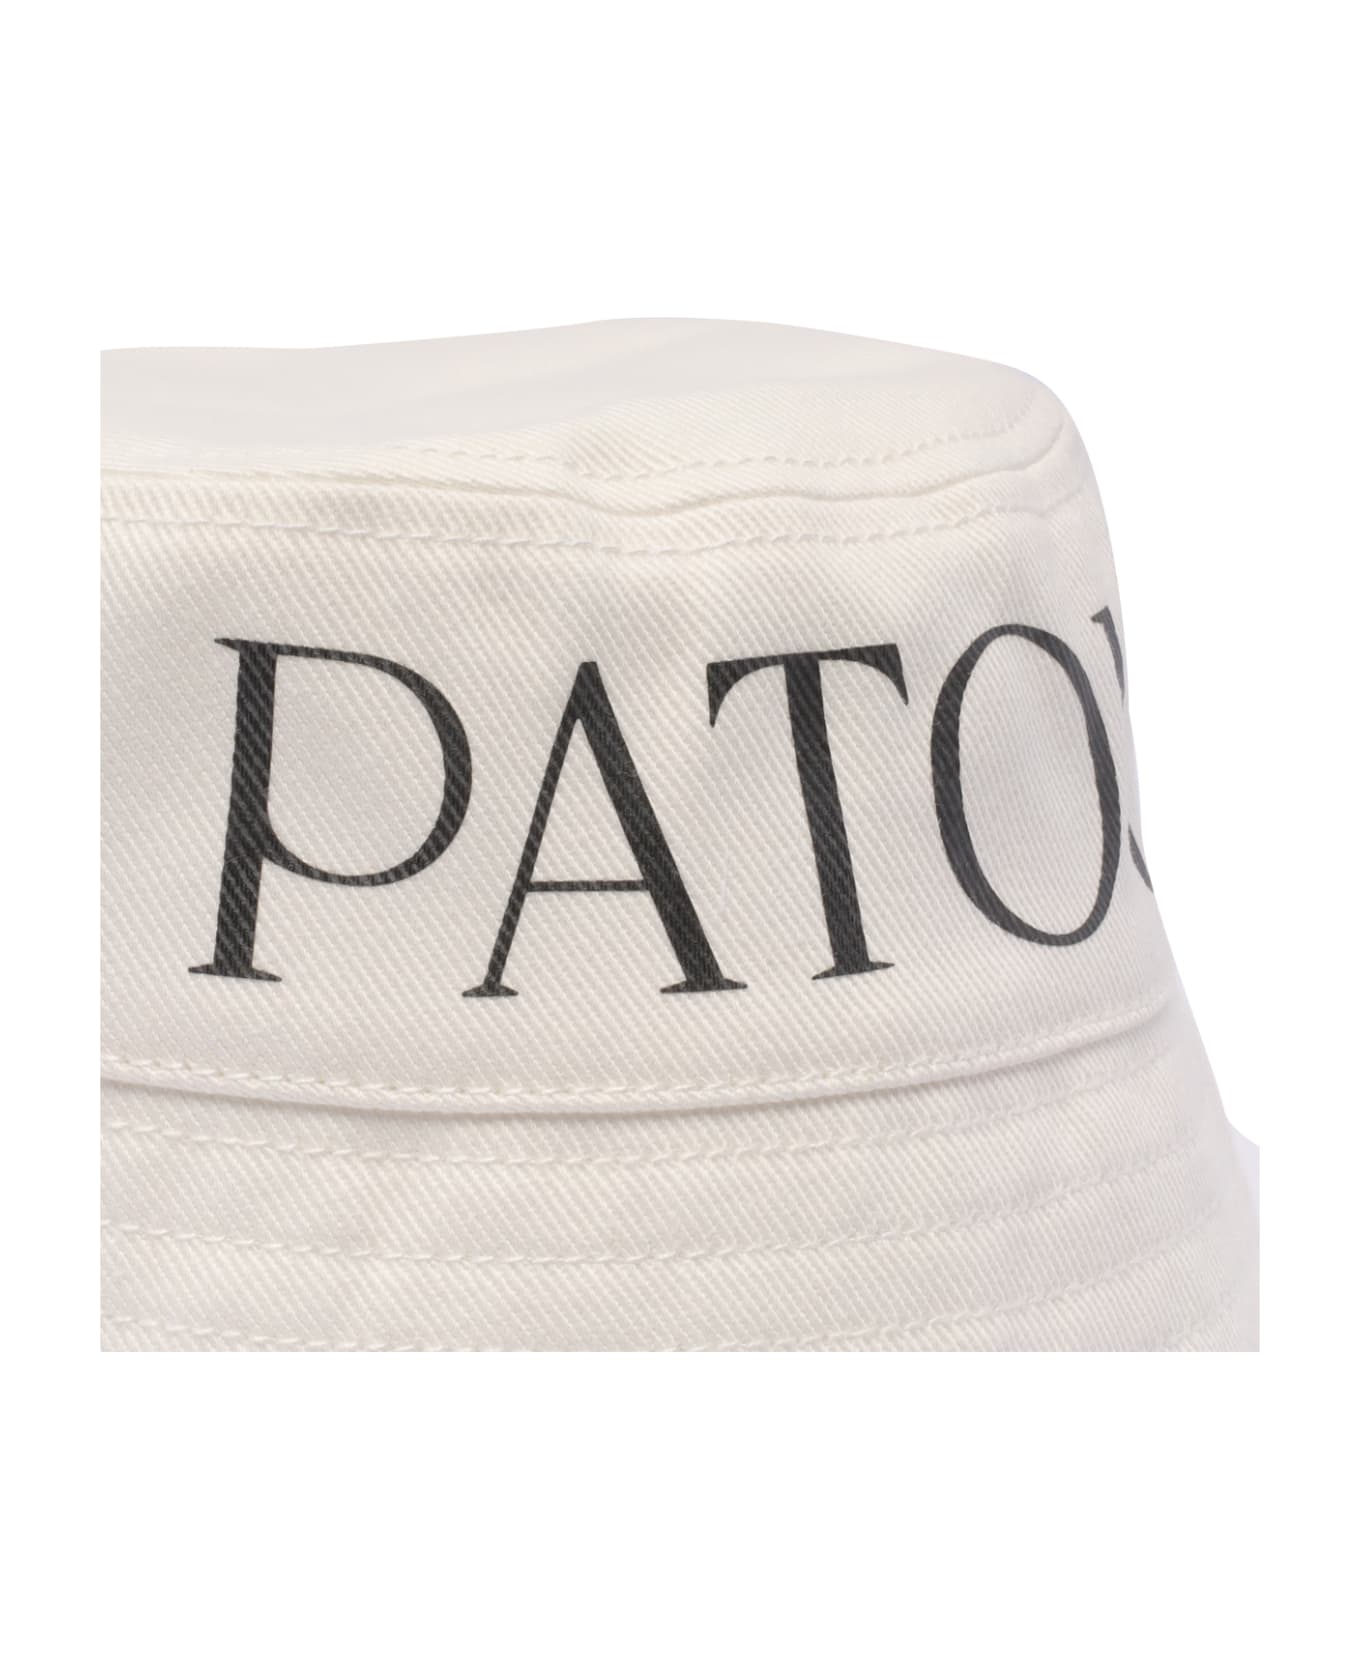 Patou Bucket Hat - WHITE 帽子